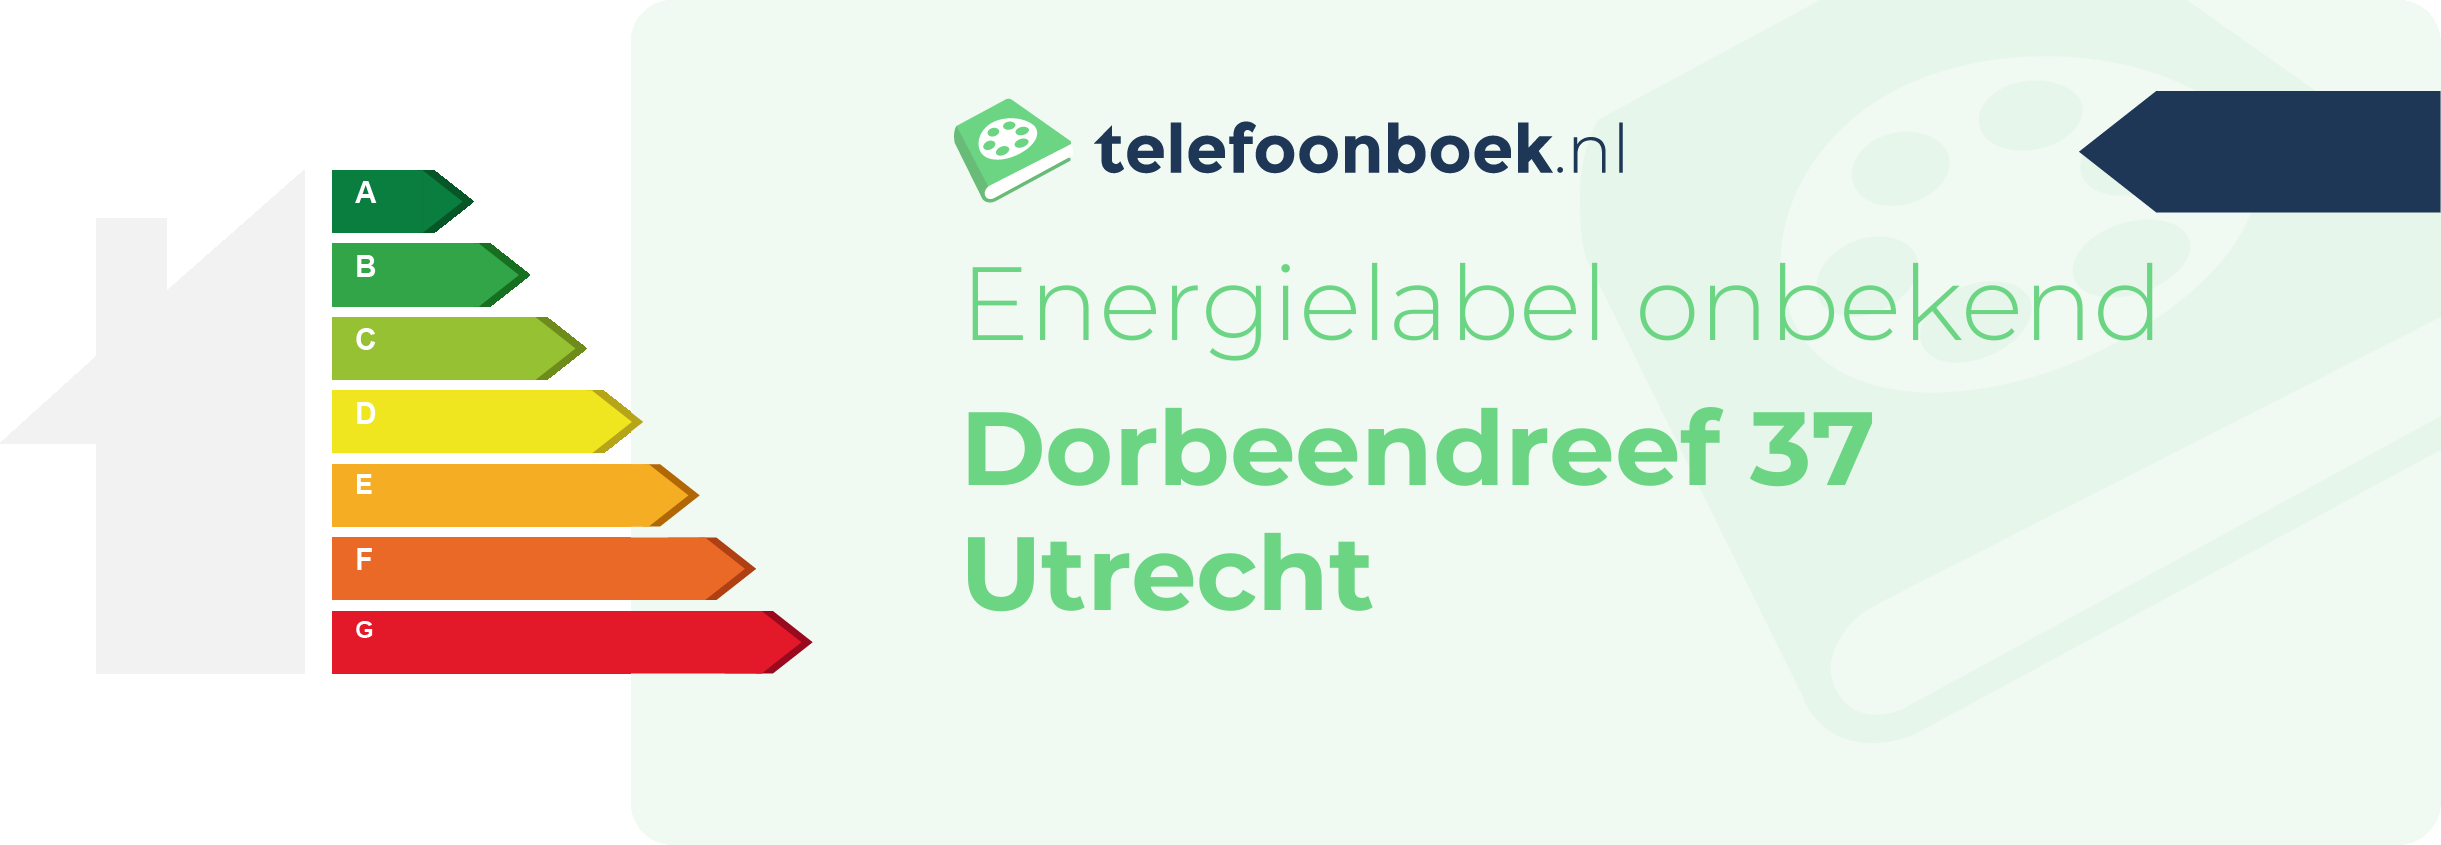 Energielabel Dorbeendreef 37 Utrecht